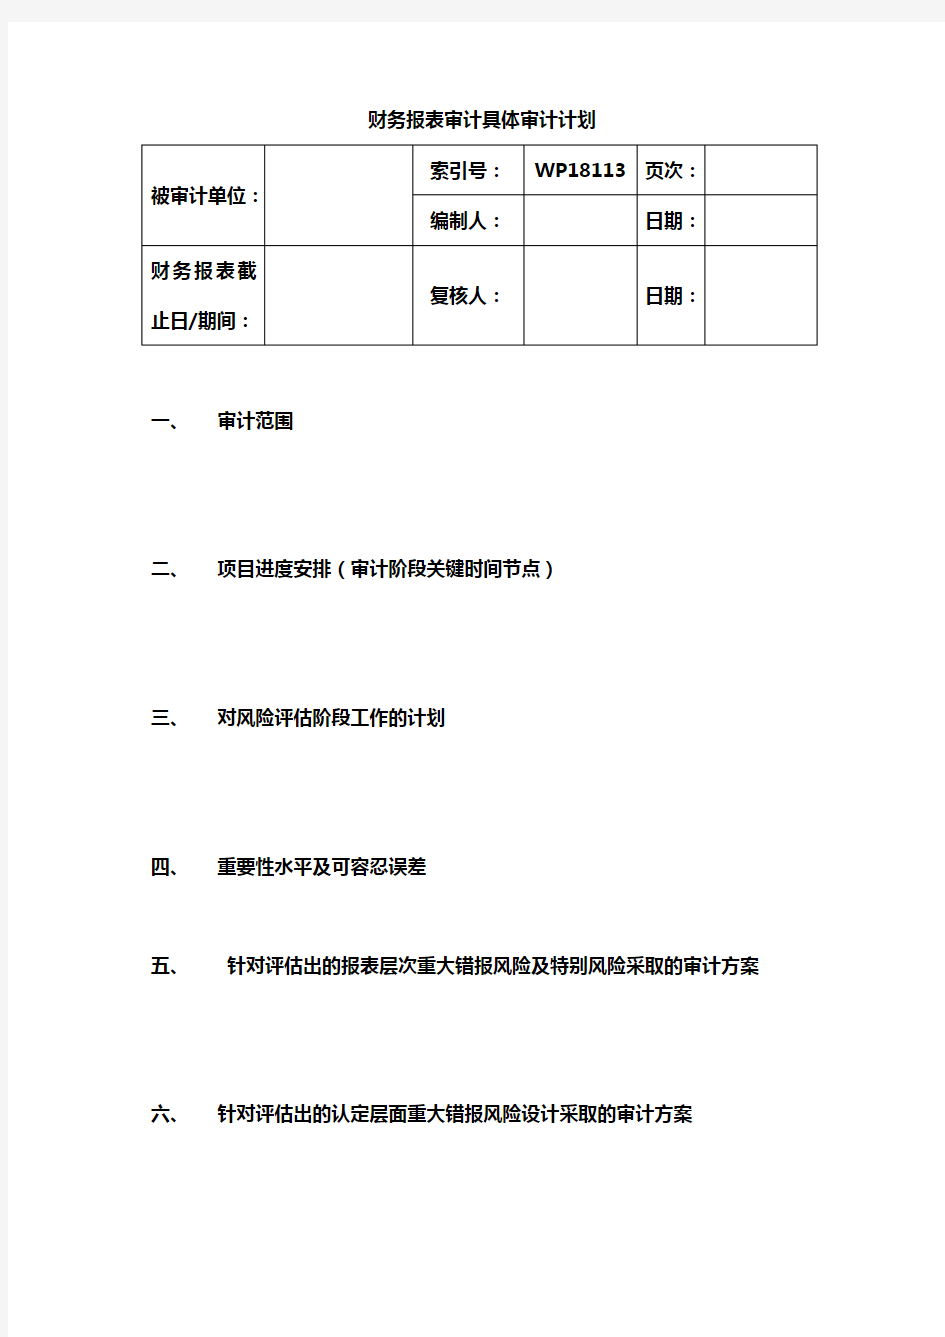 【推荐】2019年财务报表具体审计计划(2014.12修订)